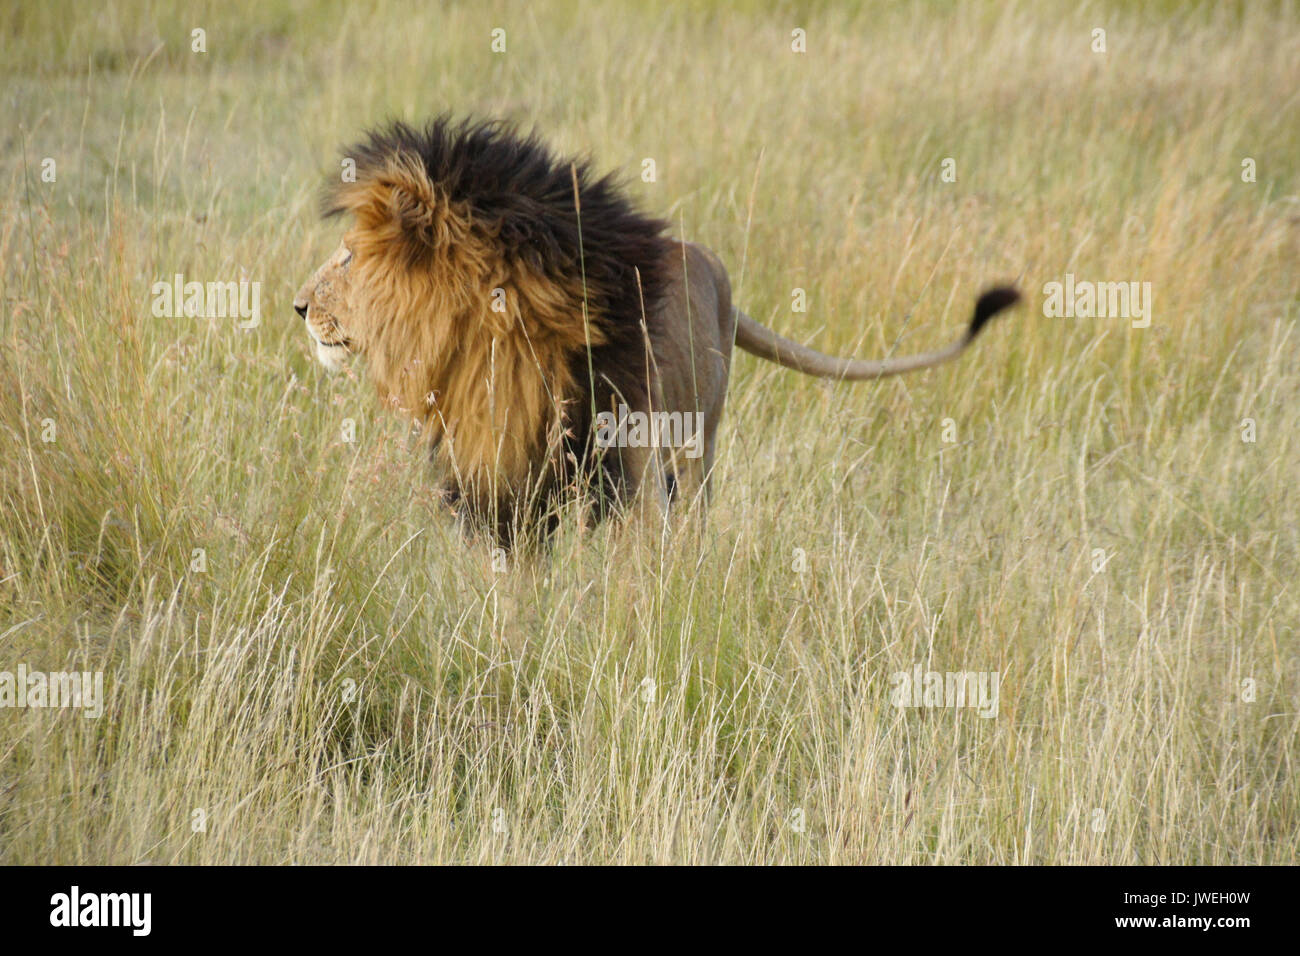 Lion à crinière noire debout dans l'herbe haute, Masai Mara, Kenya Banque D'Images